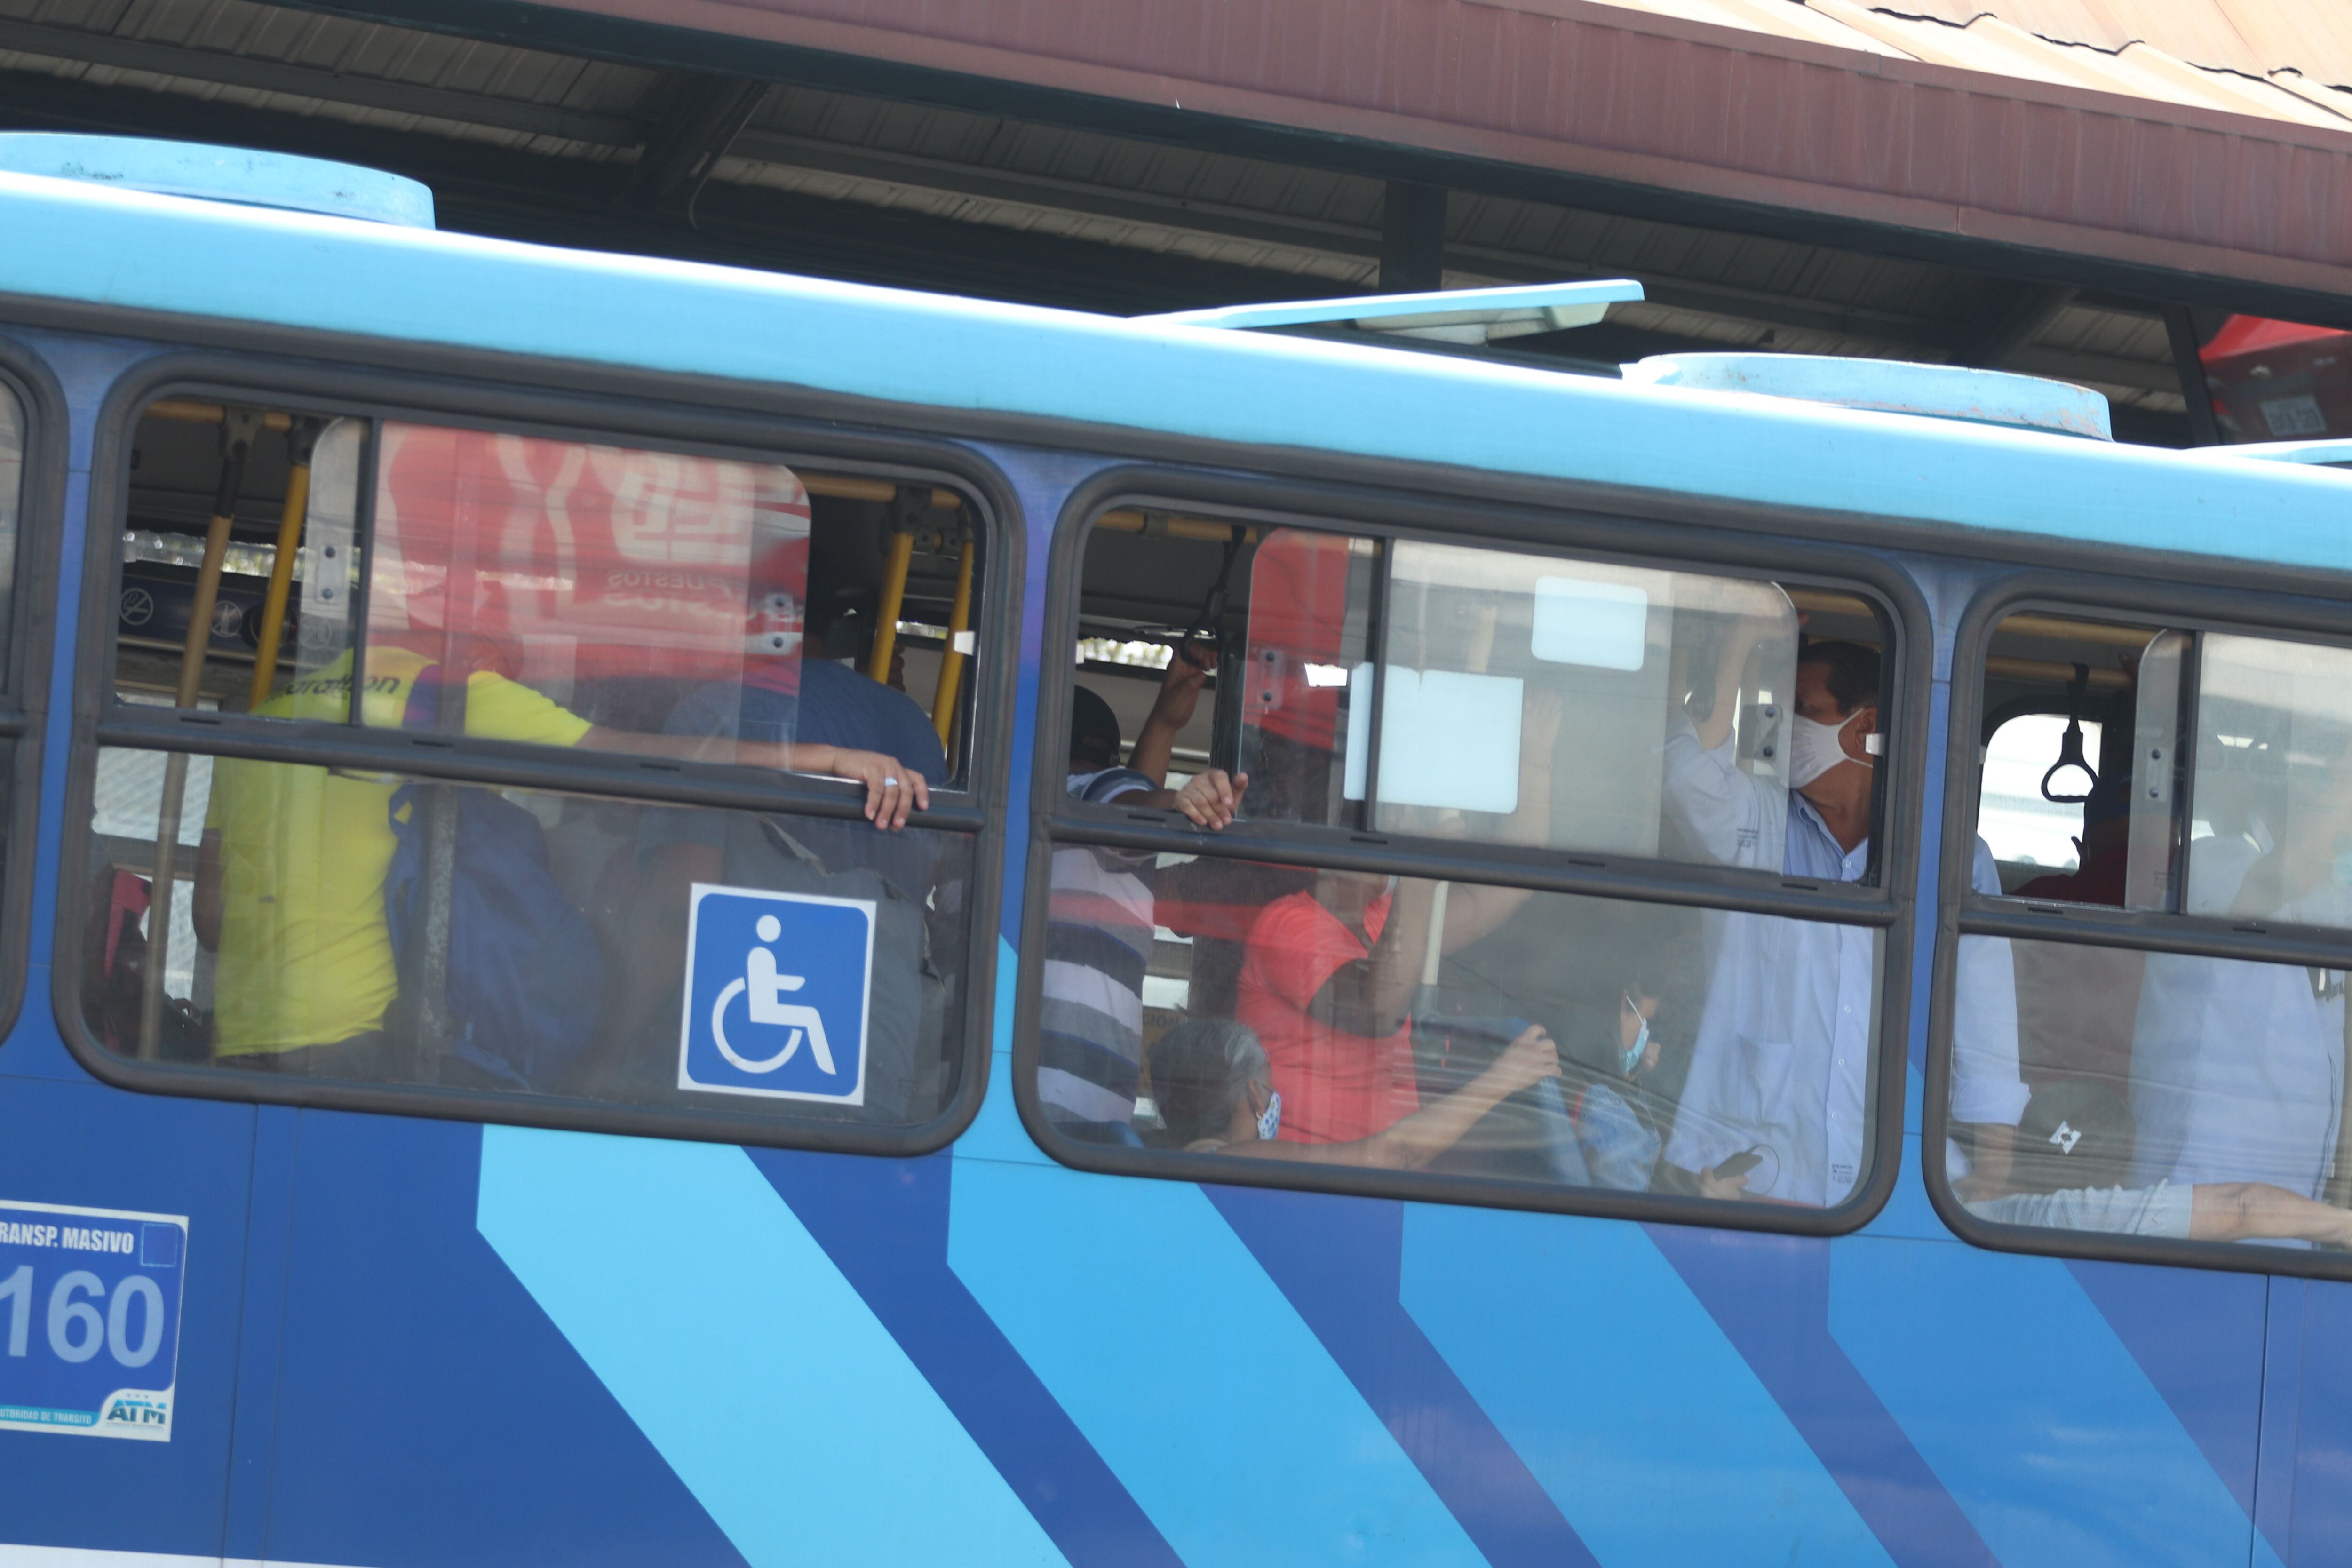 Son 122’588.244 los pasajeros que ha perdido o ha dejado de movilizar la Metrovía desde el inicio de la pandemia en el 2020, en comparación con los usuarios que tenía en el 2019. Foto: Ronald  Cedeño